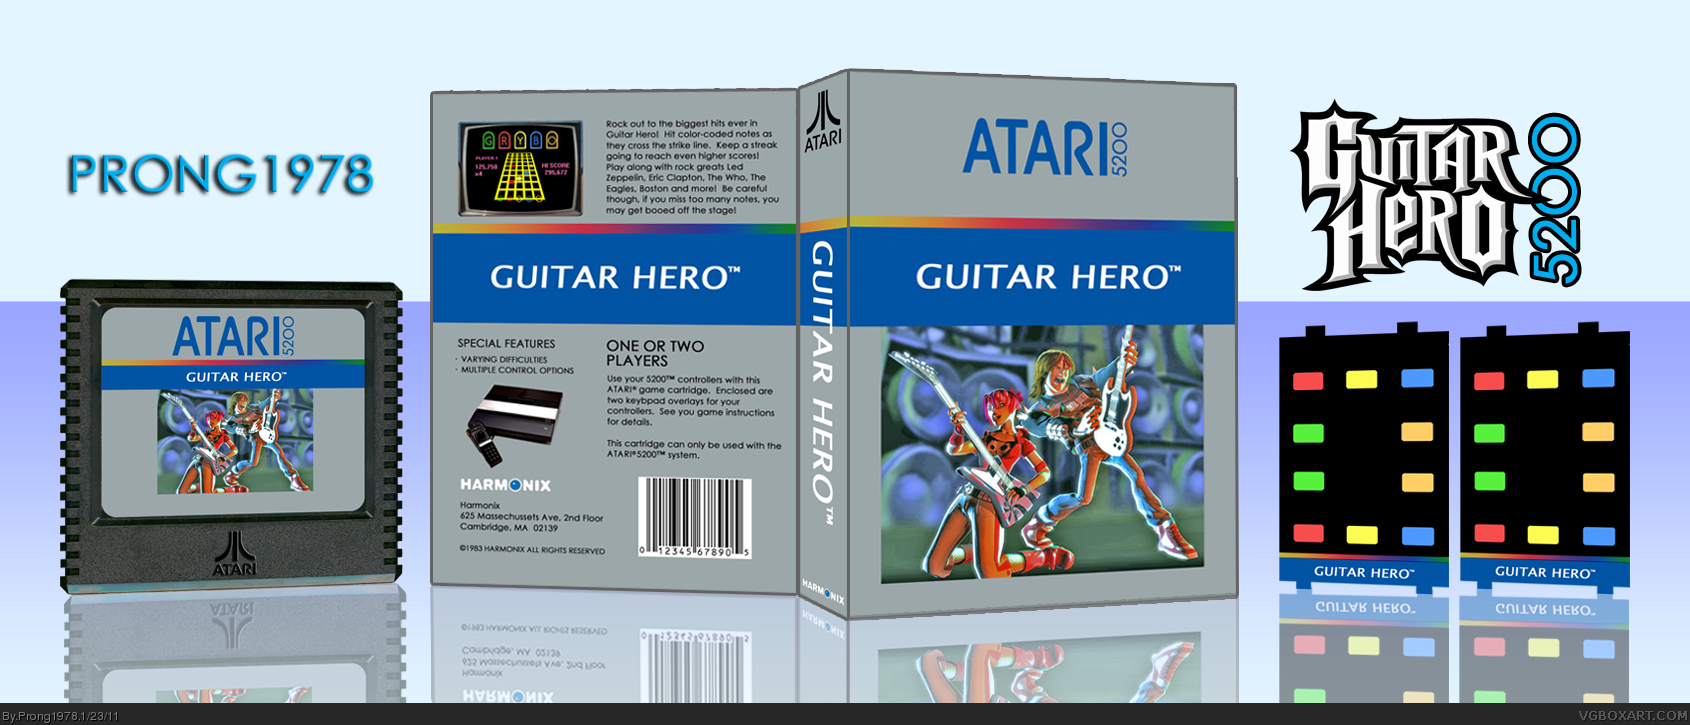 Guitar Hero 5200 box cover